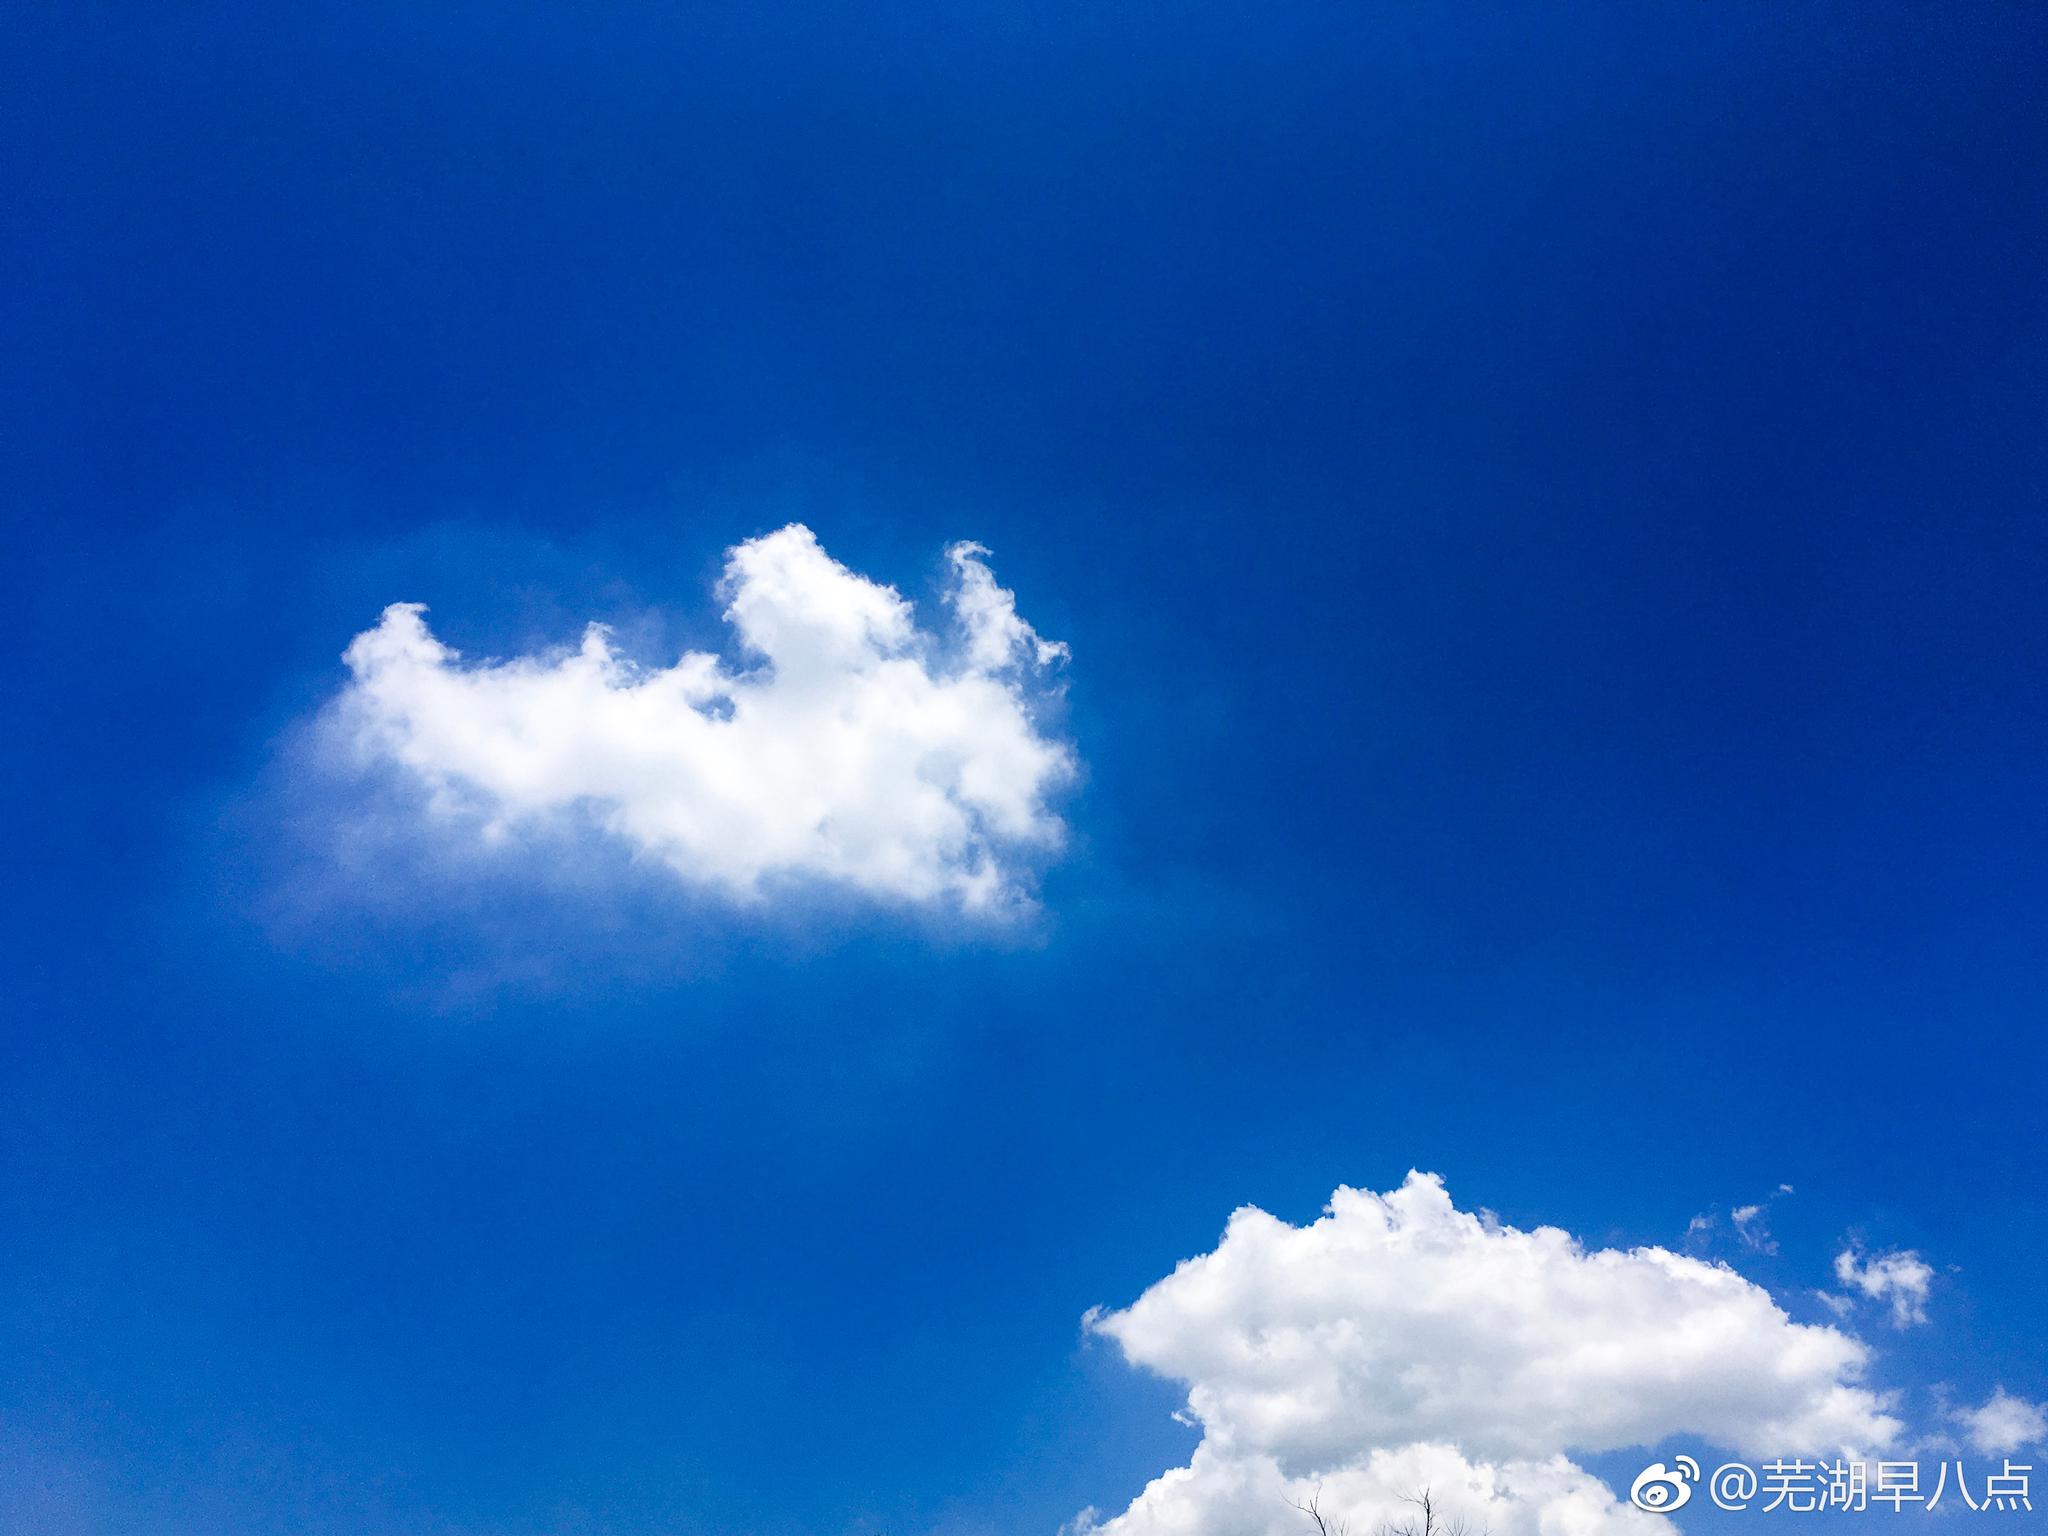 爱就像蓝天白云,晴空万里